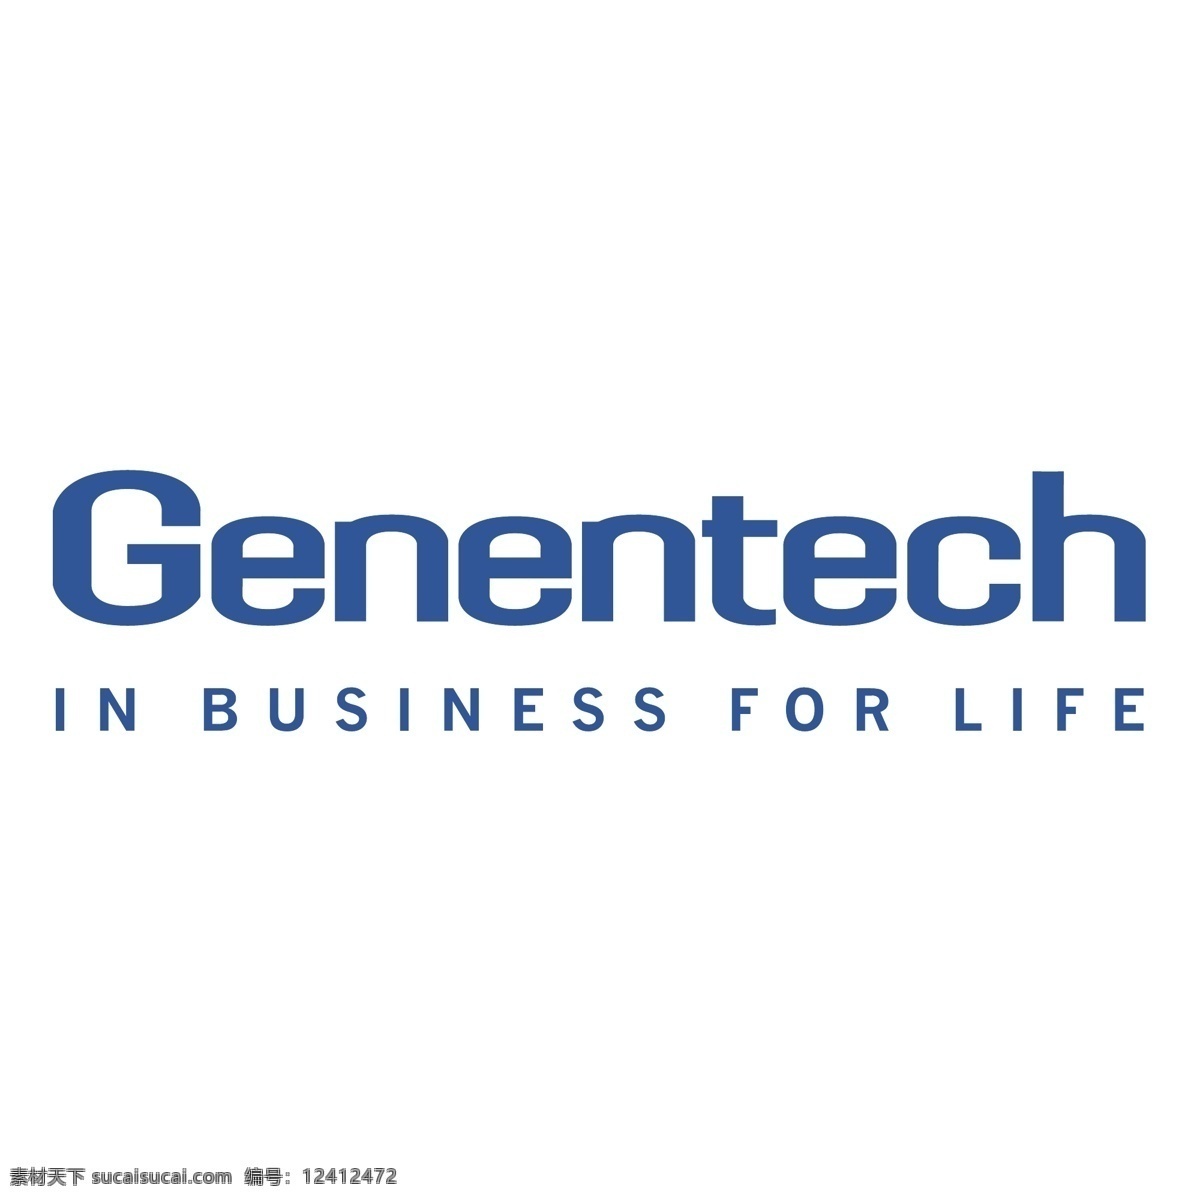 基因泰克0 矢量免费下载 基因技术 基因 泰克 公司 logo 矢量 genentech 标志 基因泰克 载体基因泰克 载体 矢量图 建筑家居